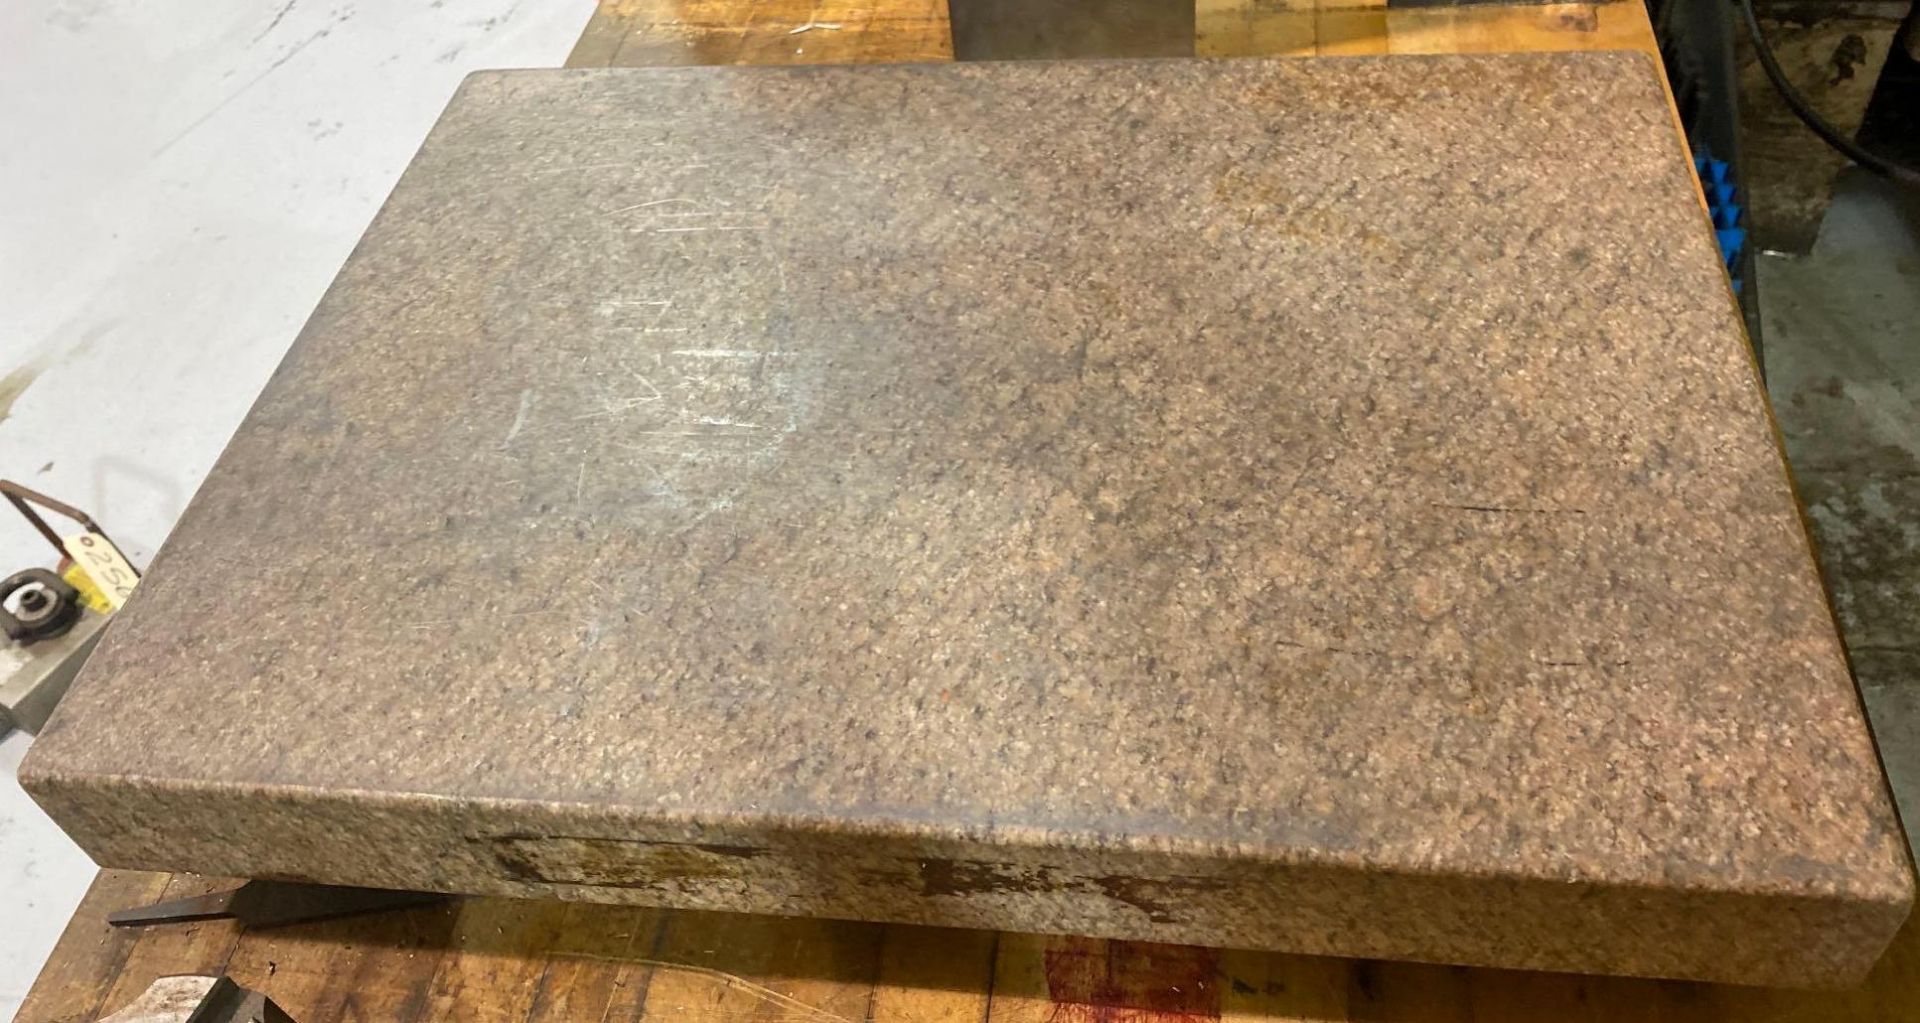 18" x 24" Herman 2 Ledge Granite Plate - Image 4 of 6